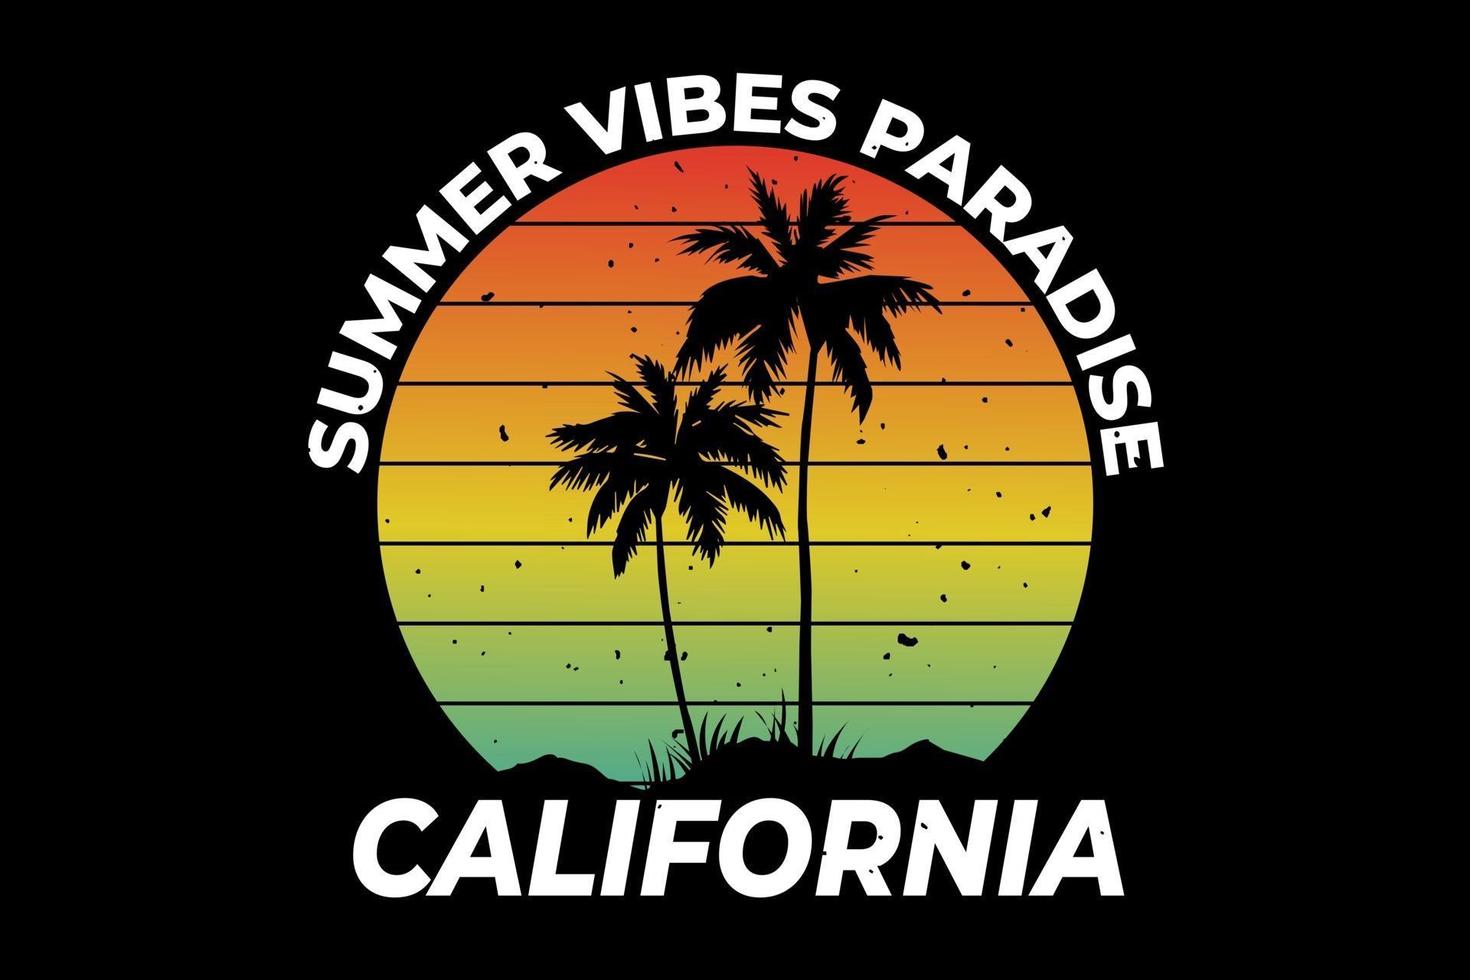 t-shirt california verão vibes paraíso estilo retro vetor